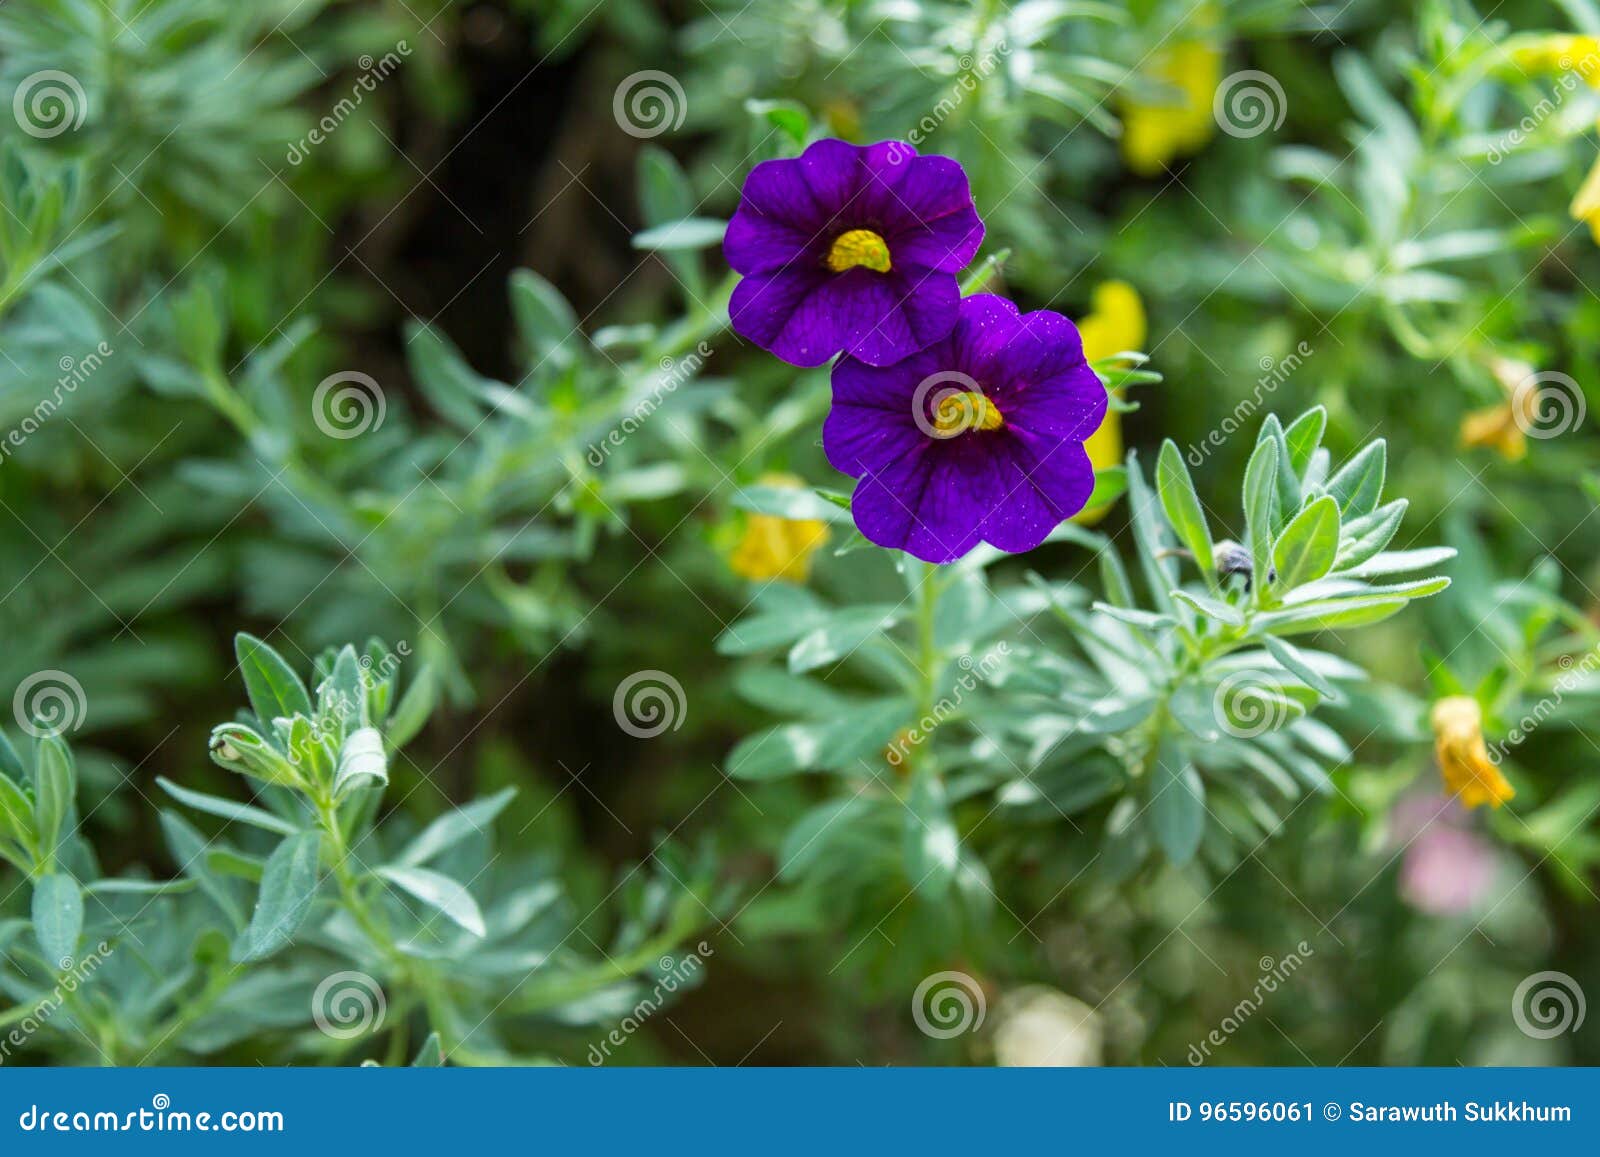 Fiore della petunia nel giardino, nei precedenti della natura o nella carta da parati